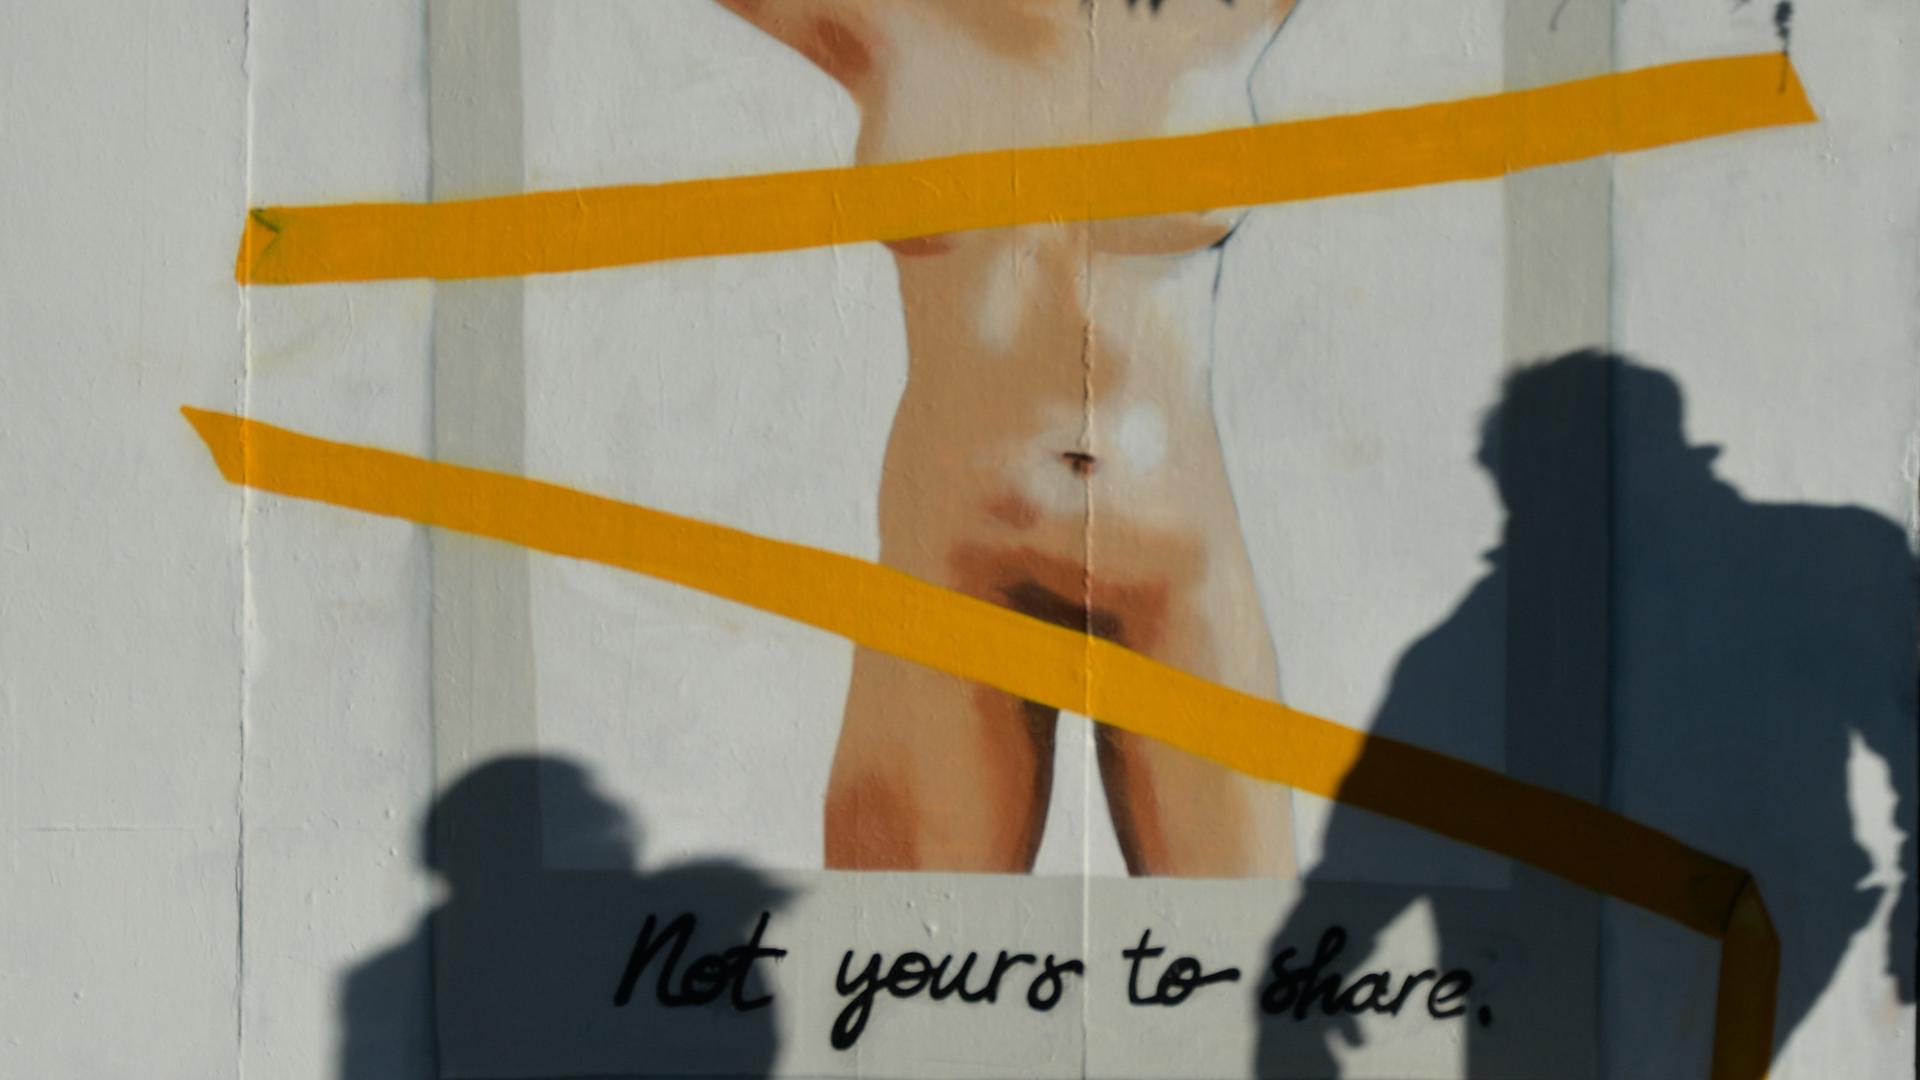 Protest gegen "revenge porn" und die irische Gesetzgebung in Dublin: Wenn gegen den Willen von Betroffenen Nacktbilder im Netz verbreitet werden, kann das schlimme Folgen haben.